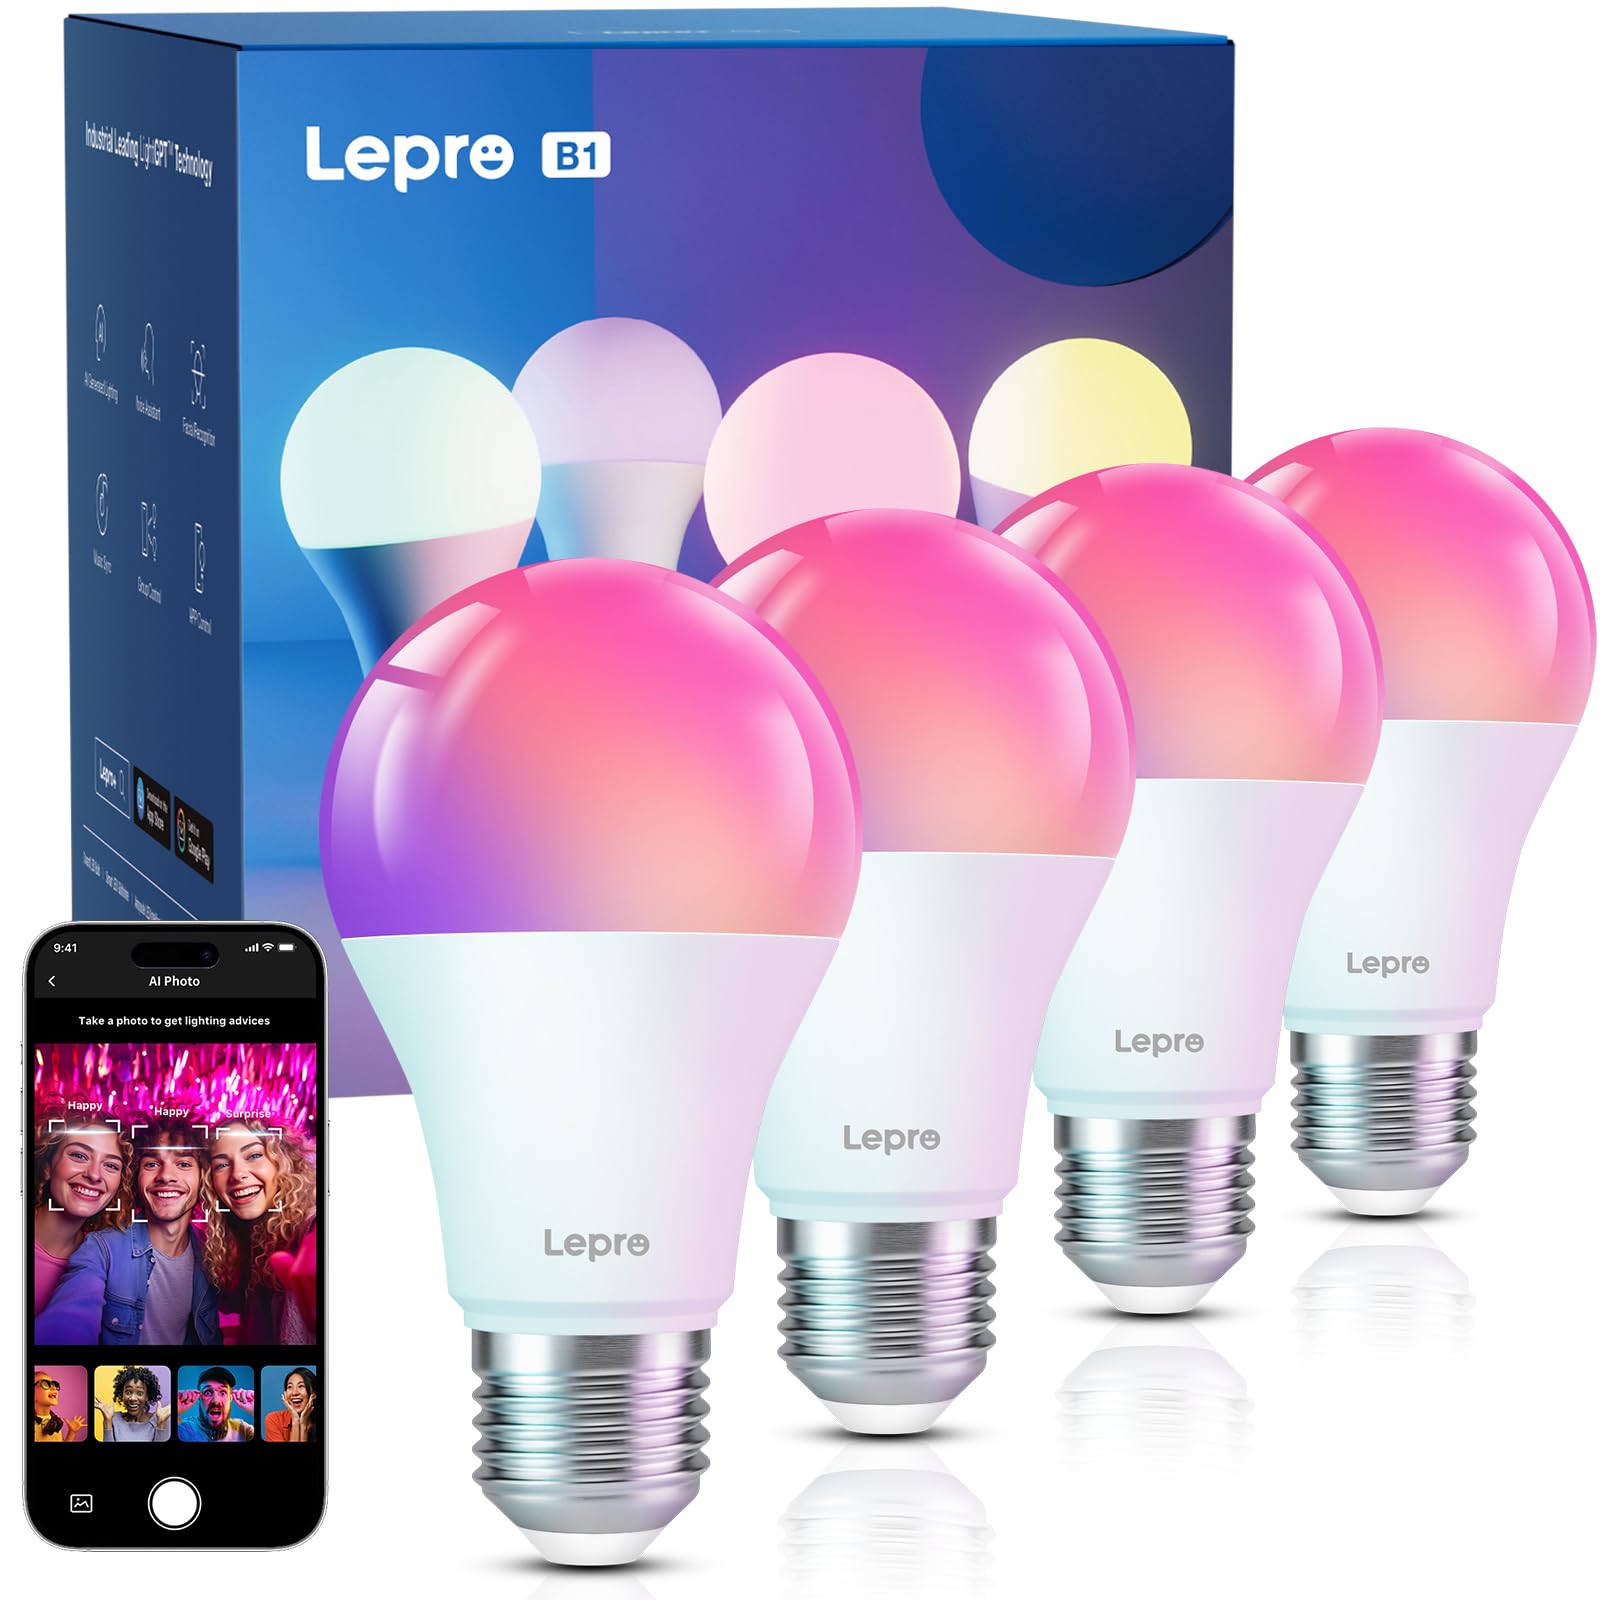 Lepro LED Alexa Lampe E27, Smart Glühbirne B1 Musik Sync, Sprachsteuerung&Emotionserkennung, RGBCCT 806lm nur 2,4GHz WLAN Birne, Kompatibel mit Alexa Echo&Google Assistant, kein Hub,4 Stück